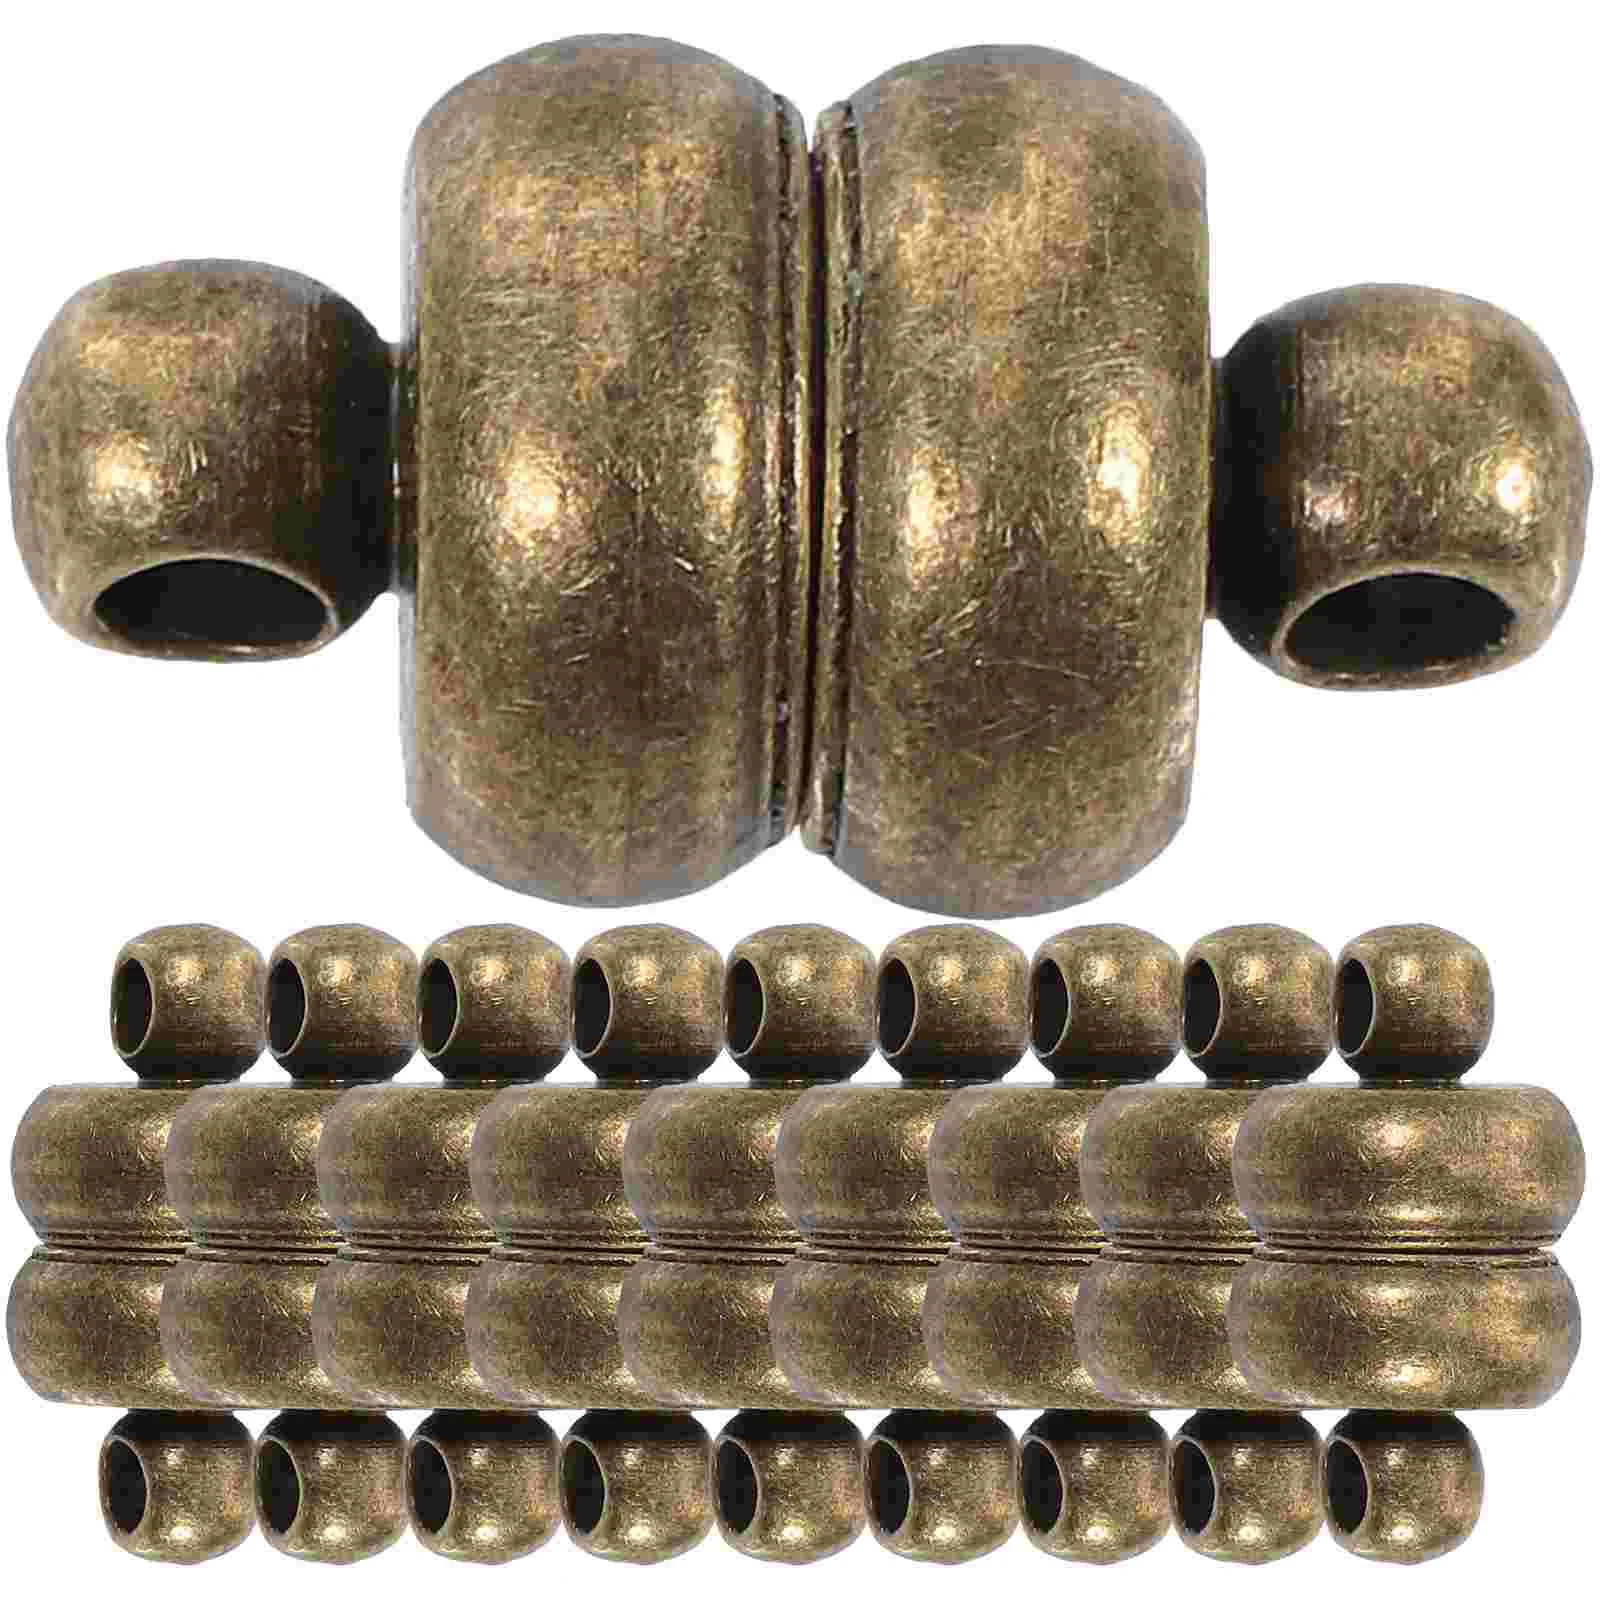 

10 Pcs Magnet Necklace Clasp Magnetic Clasps Closures Copper DIY Necklaces For Connectors Bracelet Buckle Accessory Attachment